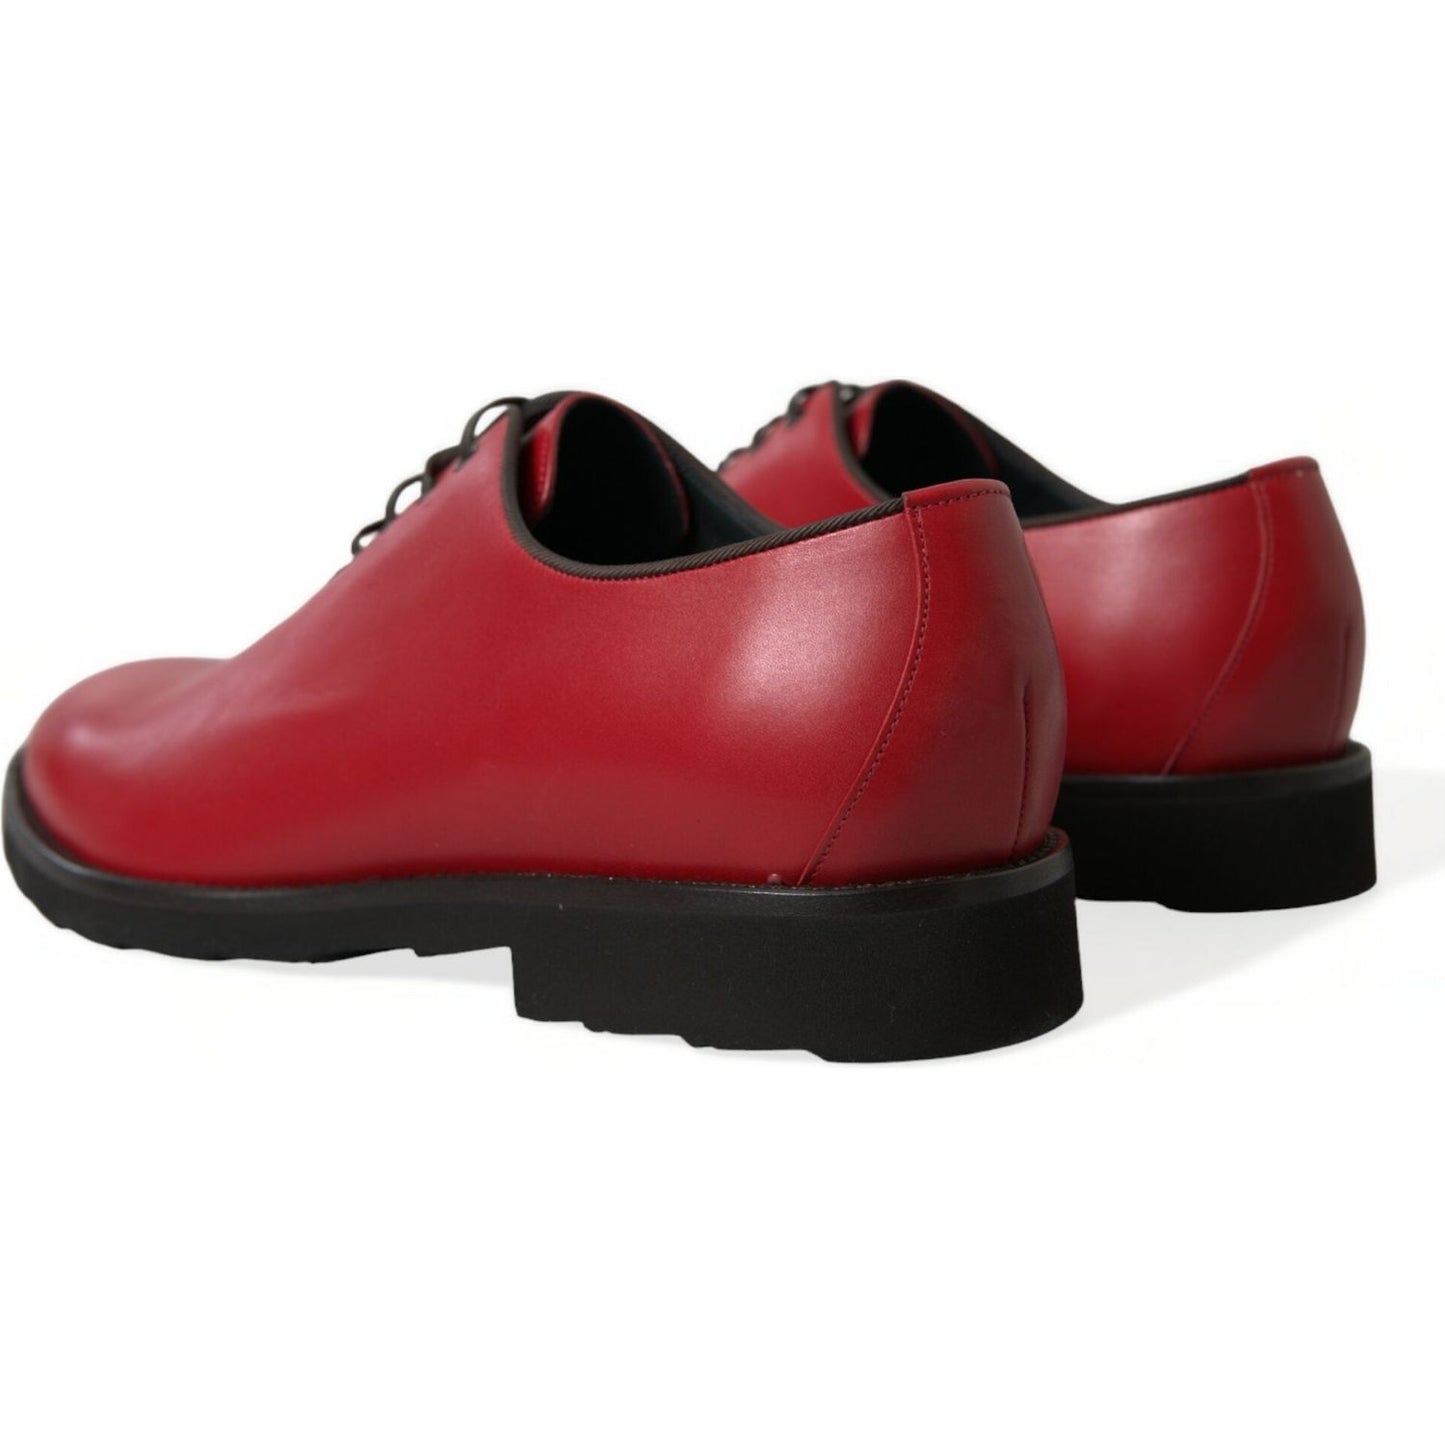 Dolce & Gabbana | Elegant Red Leather Oxford Dress Shoes| McRichard Designer Brands   